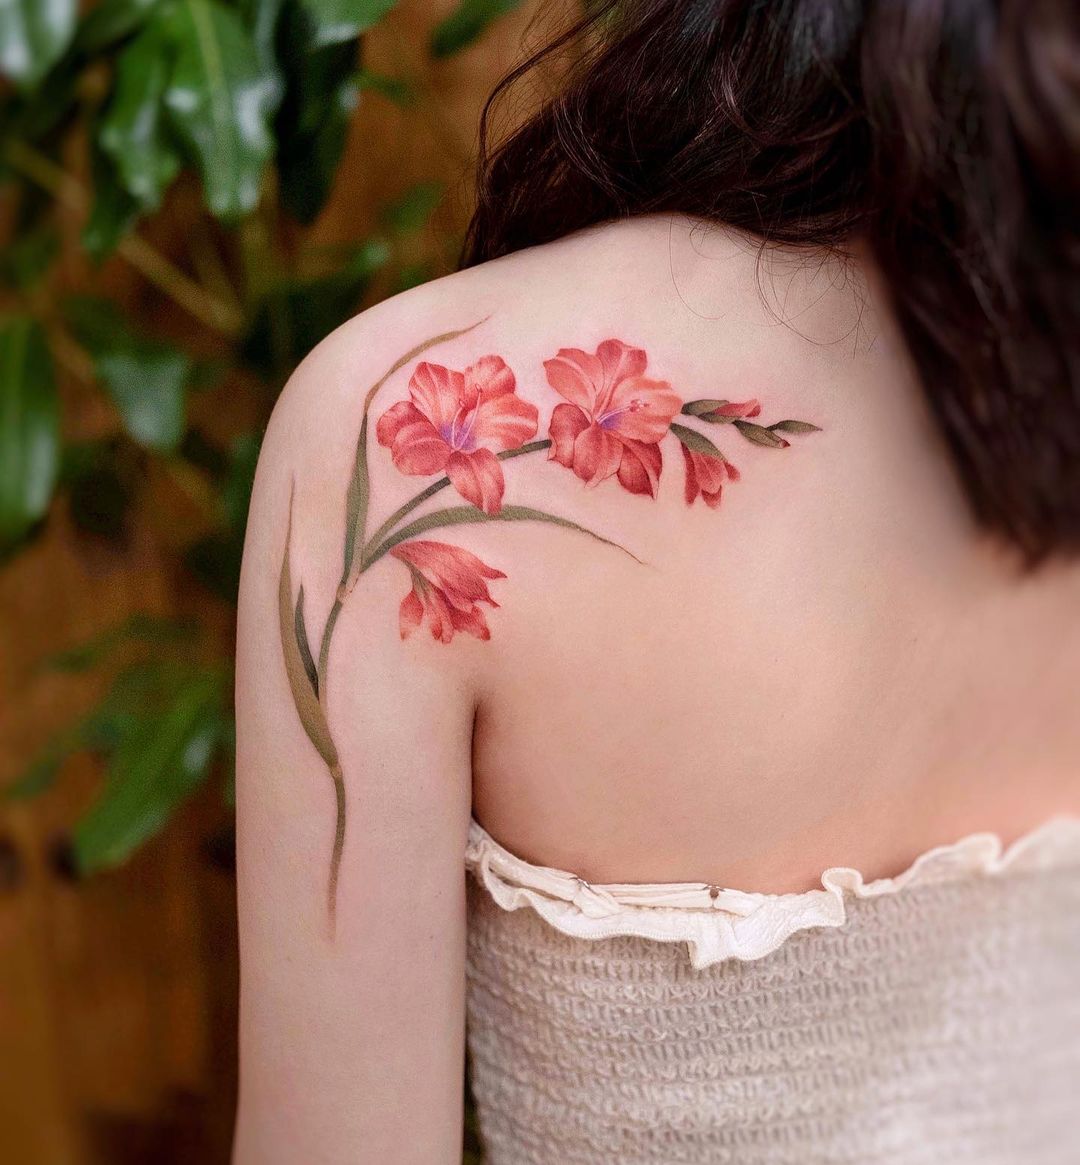 Red Gladiolus Tattoo on Shoulder